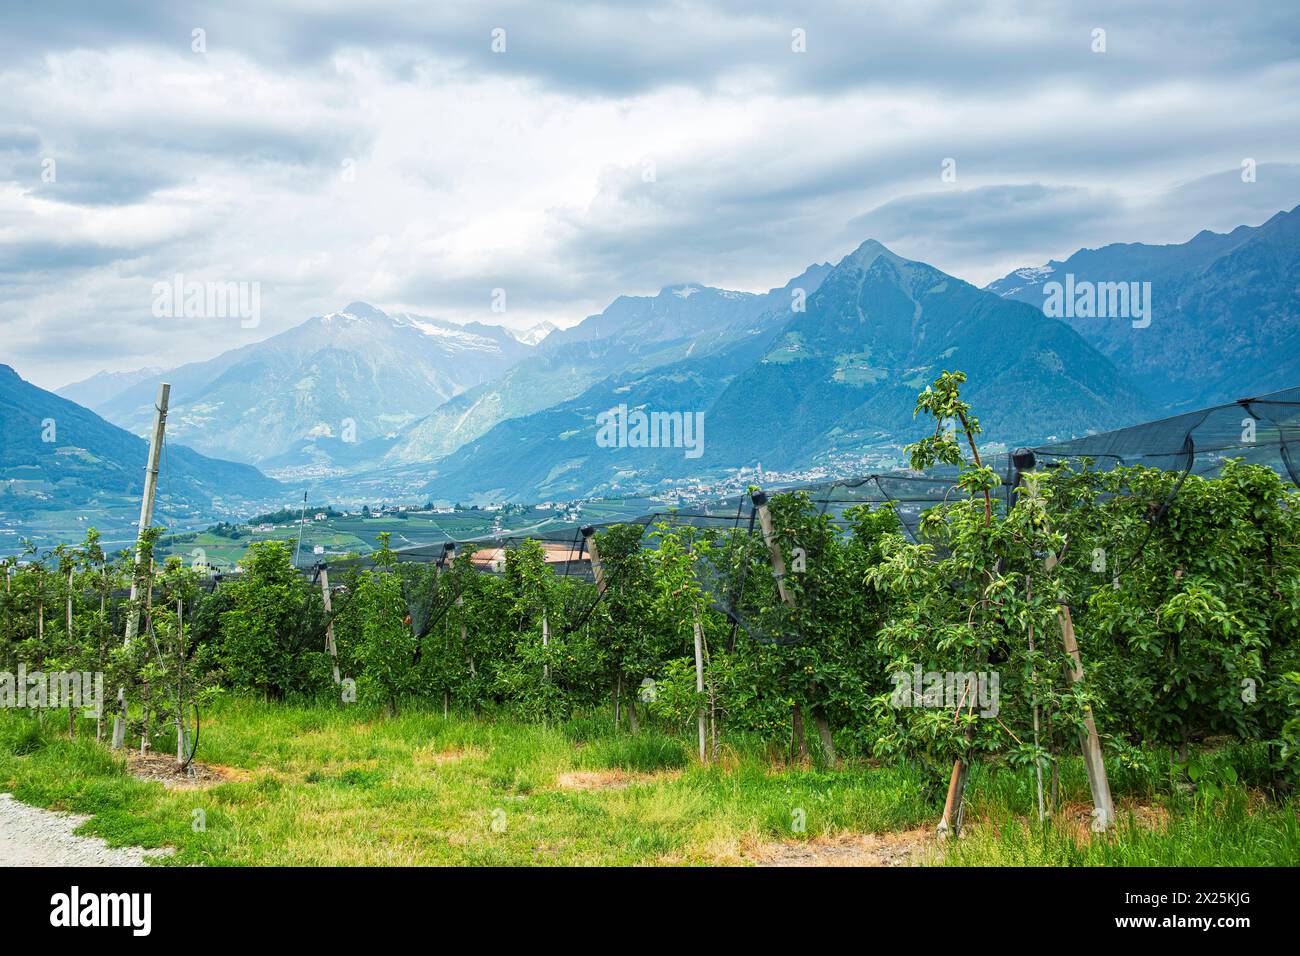 Obstplantagen, Schenna, Burggrafenamt, Südtirol, Italien Obstplantagen, eingebettet in die malerische alpine Landschaft oberhalb von Meran auf dem Gem Stock Photo